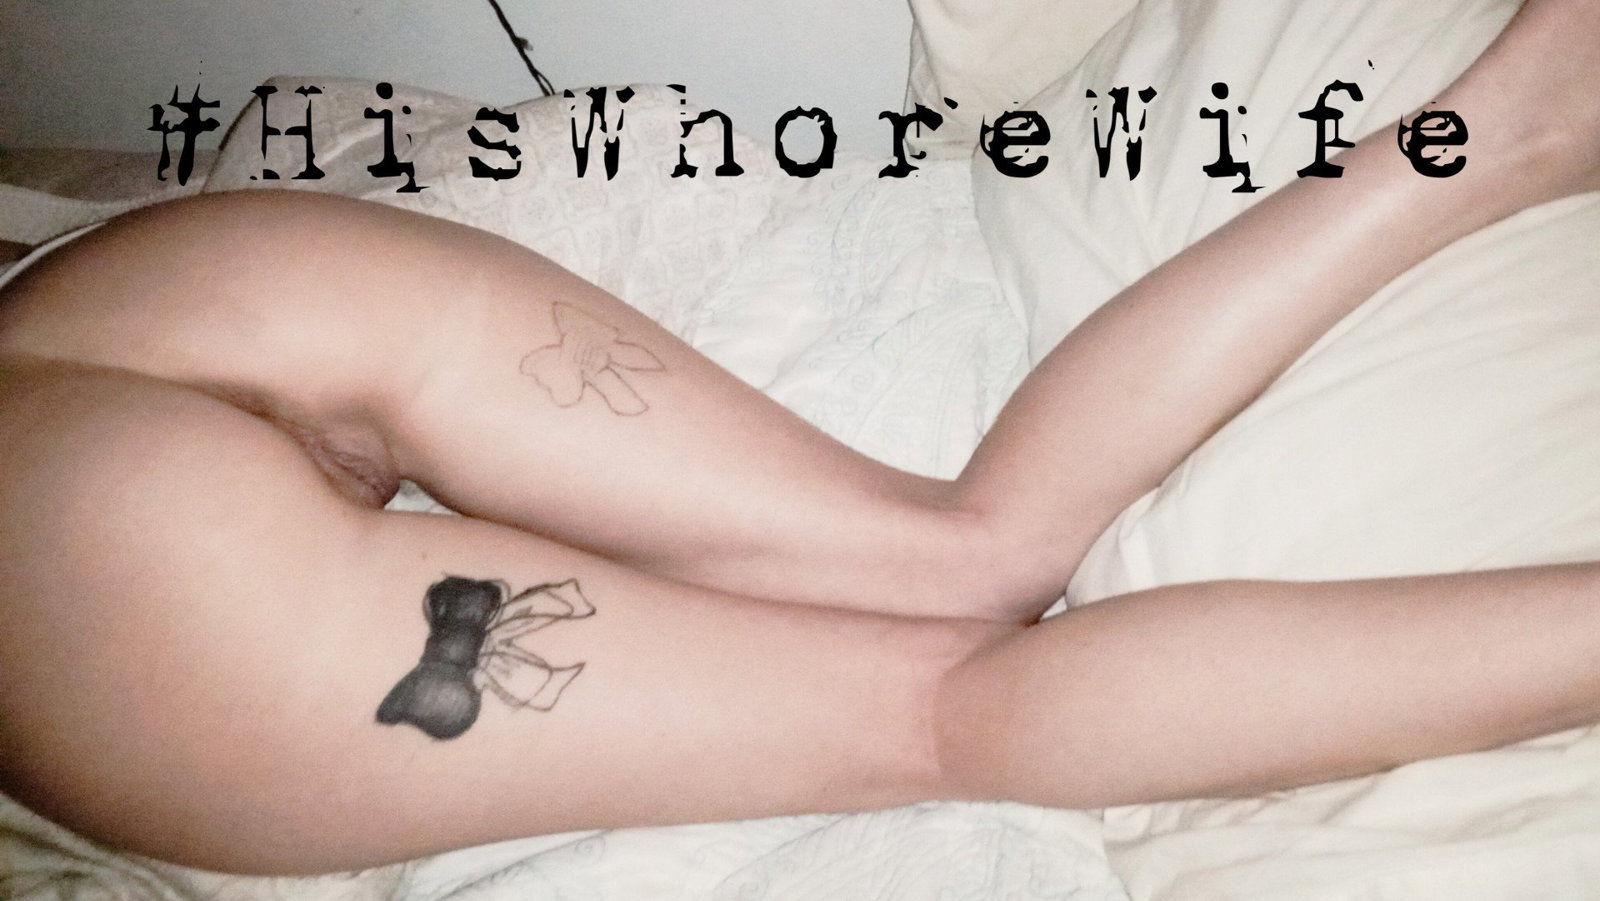 Cover photo of Hiswhorewife